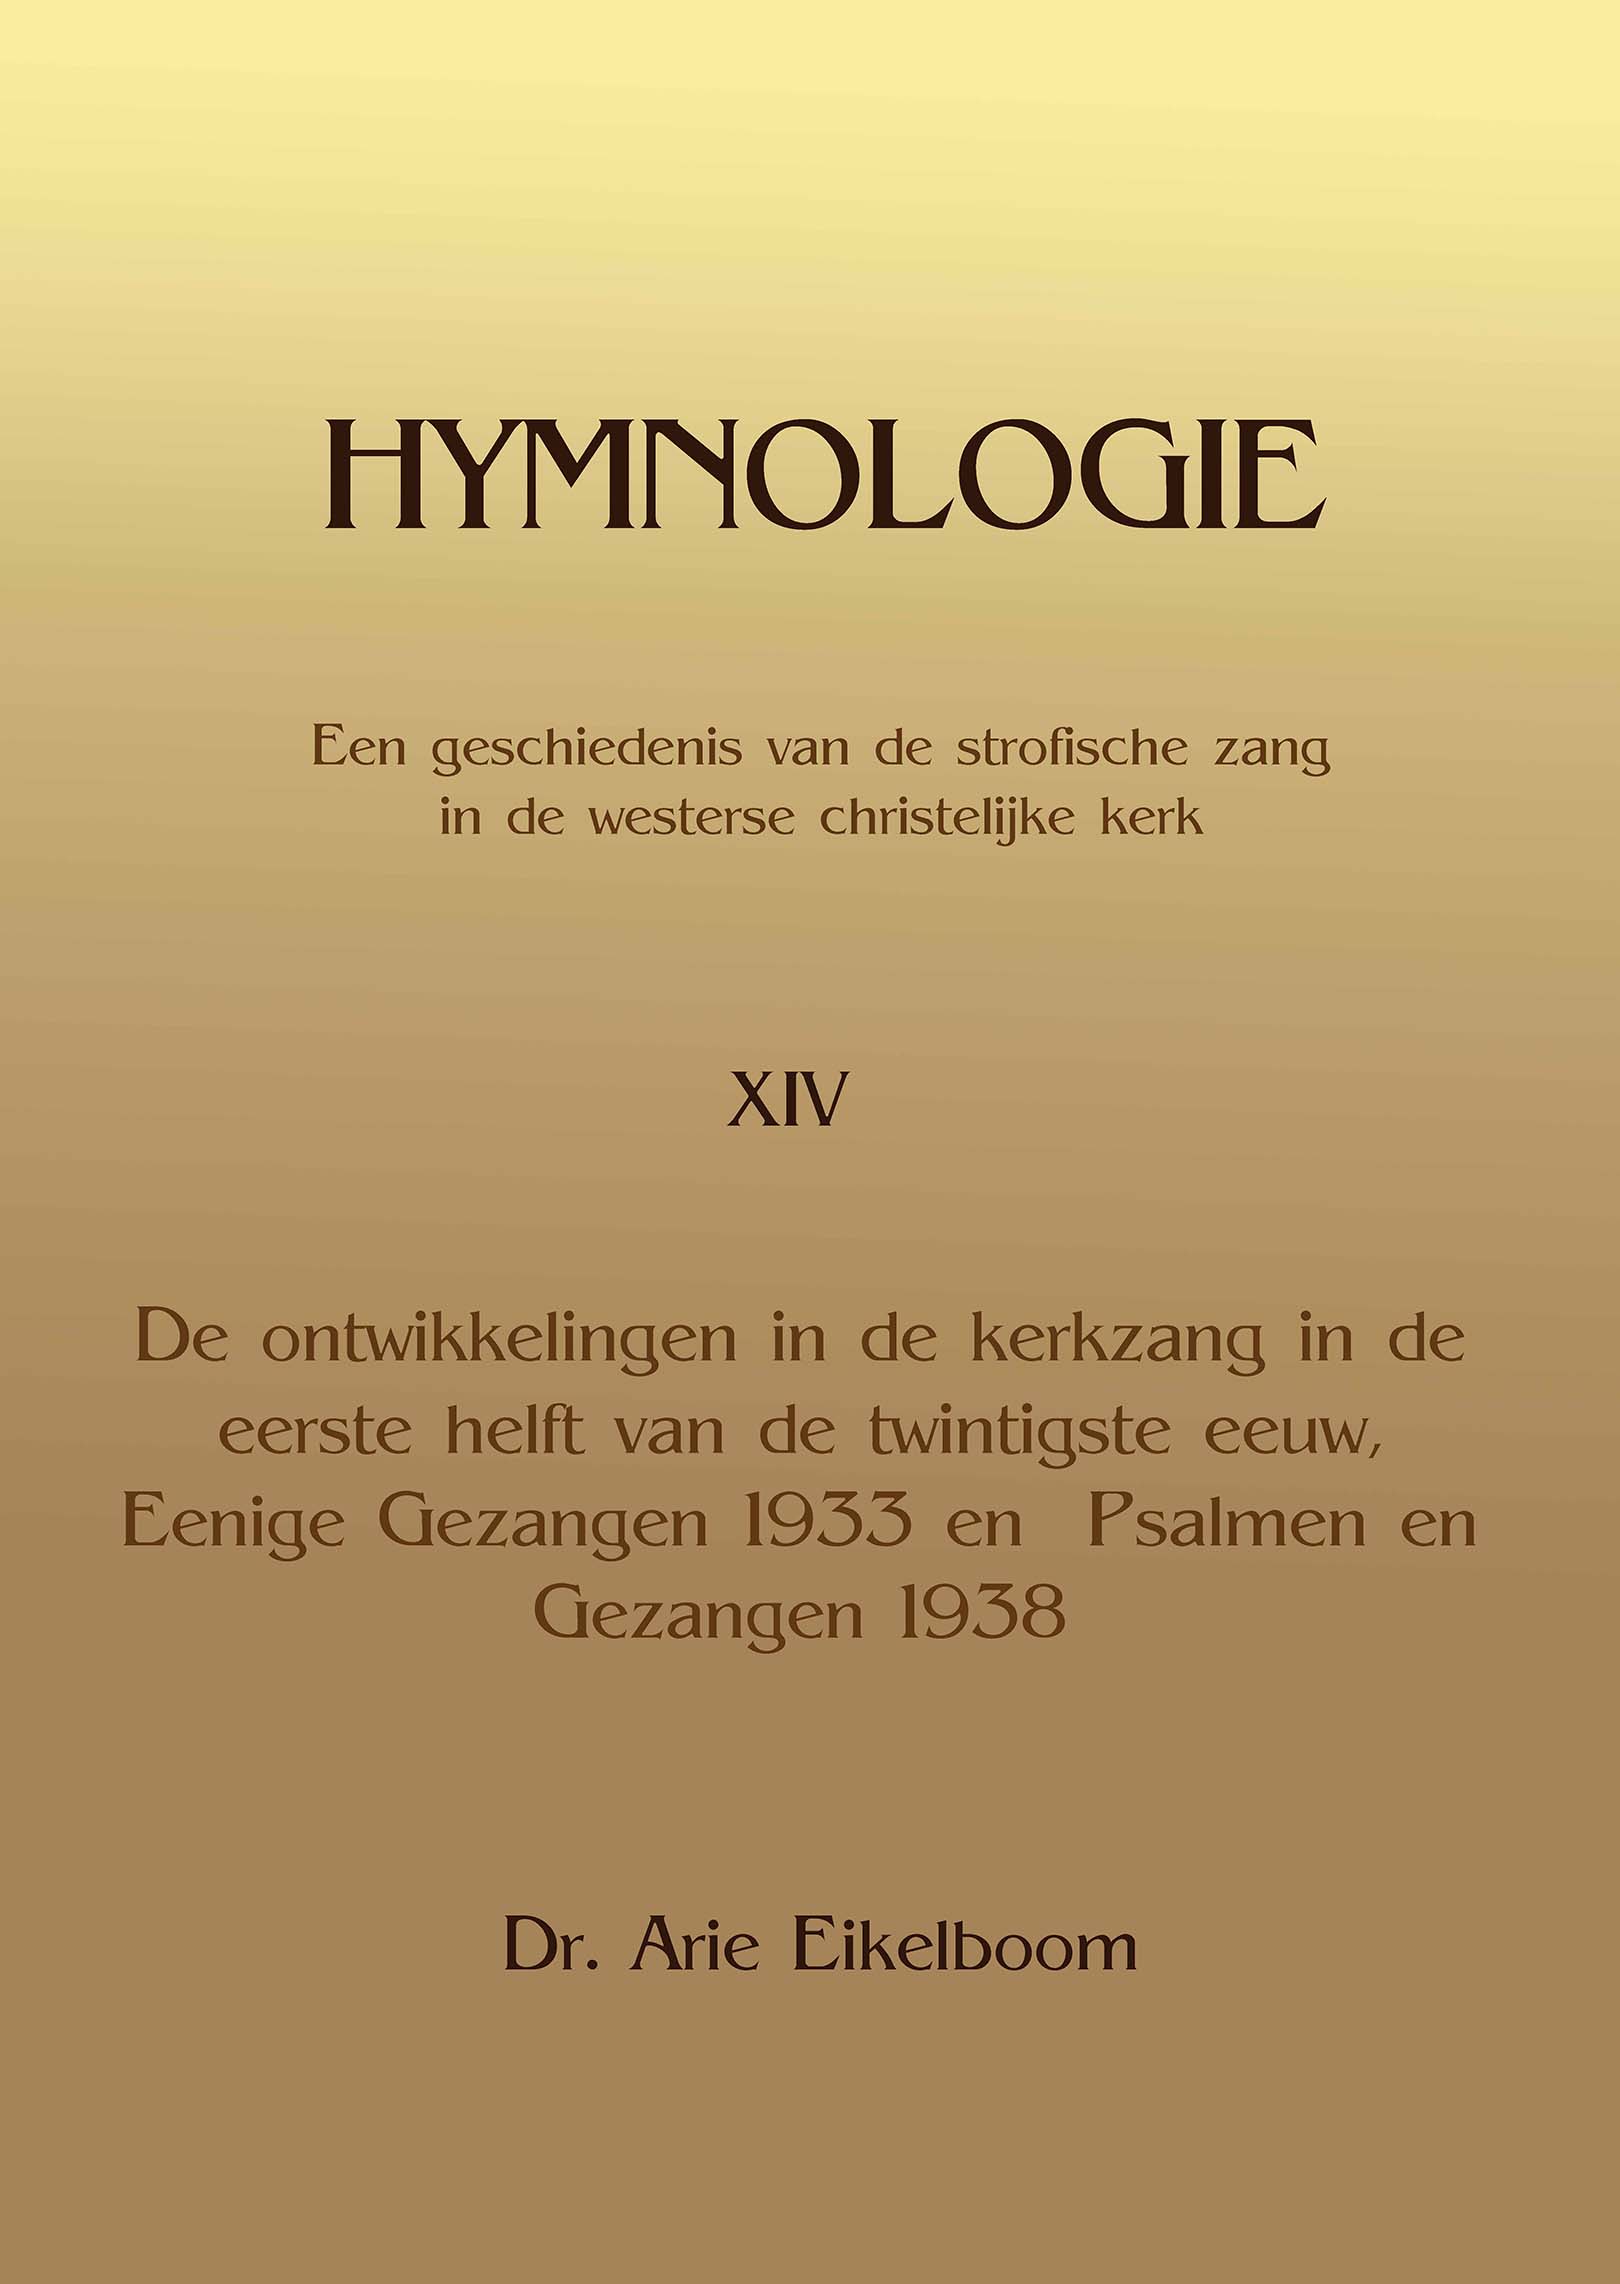 Hymnologie14